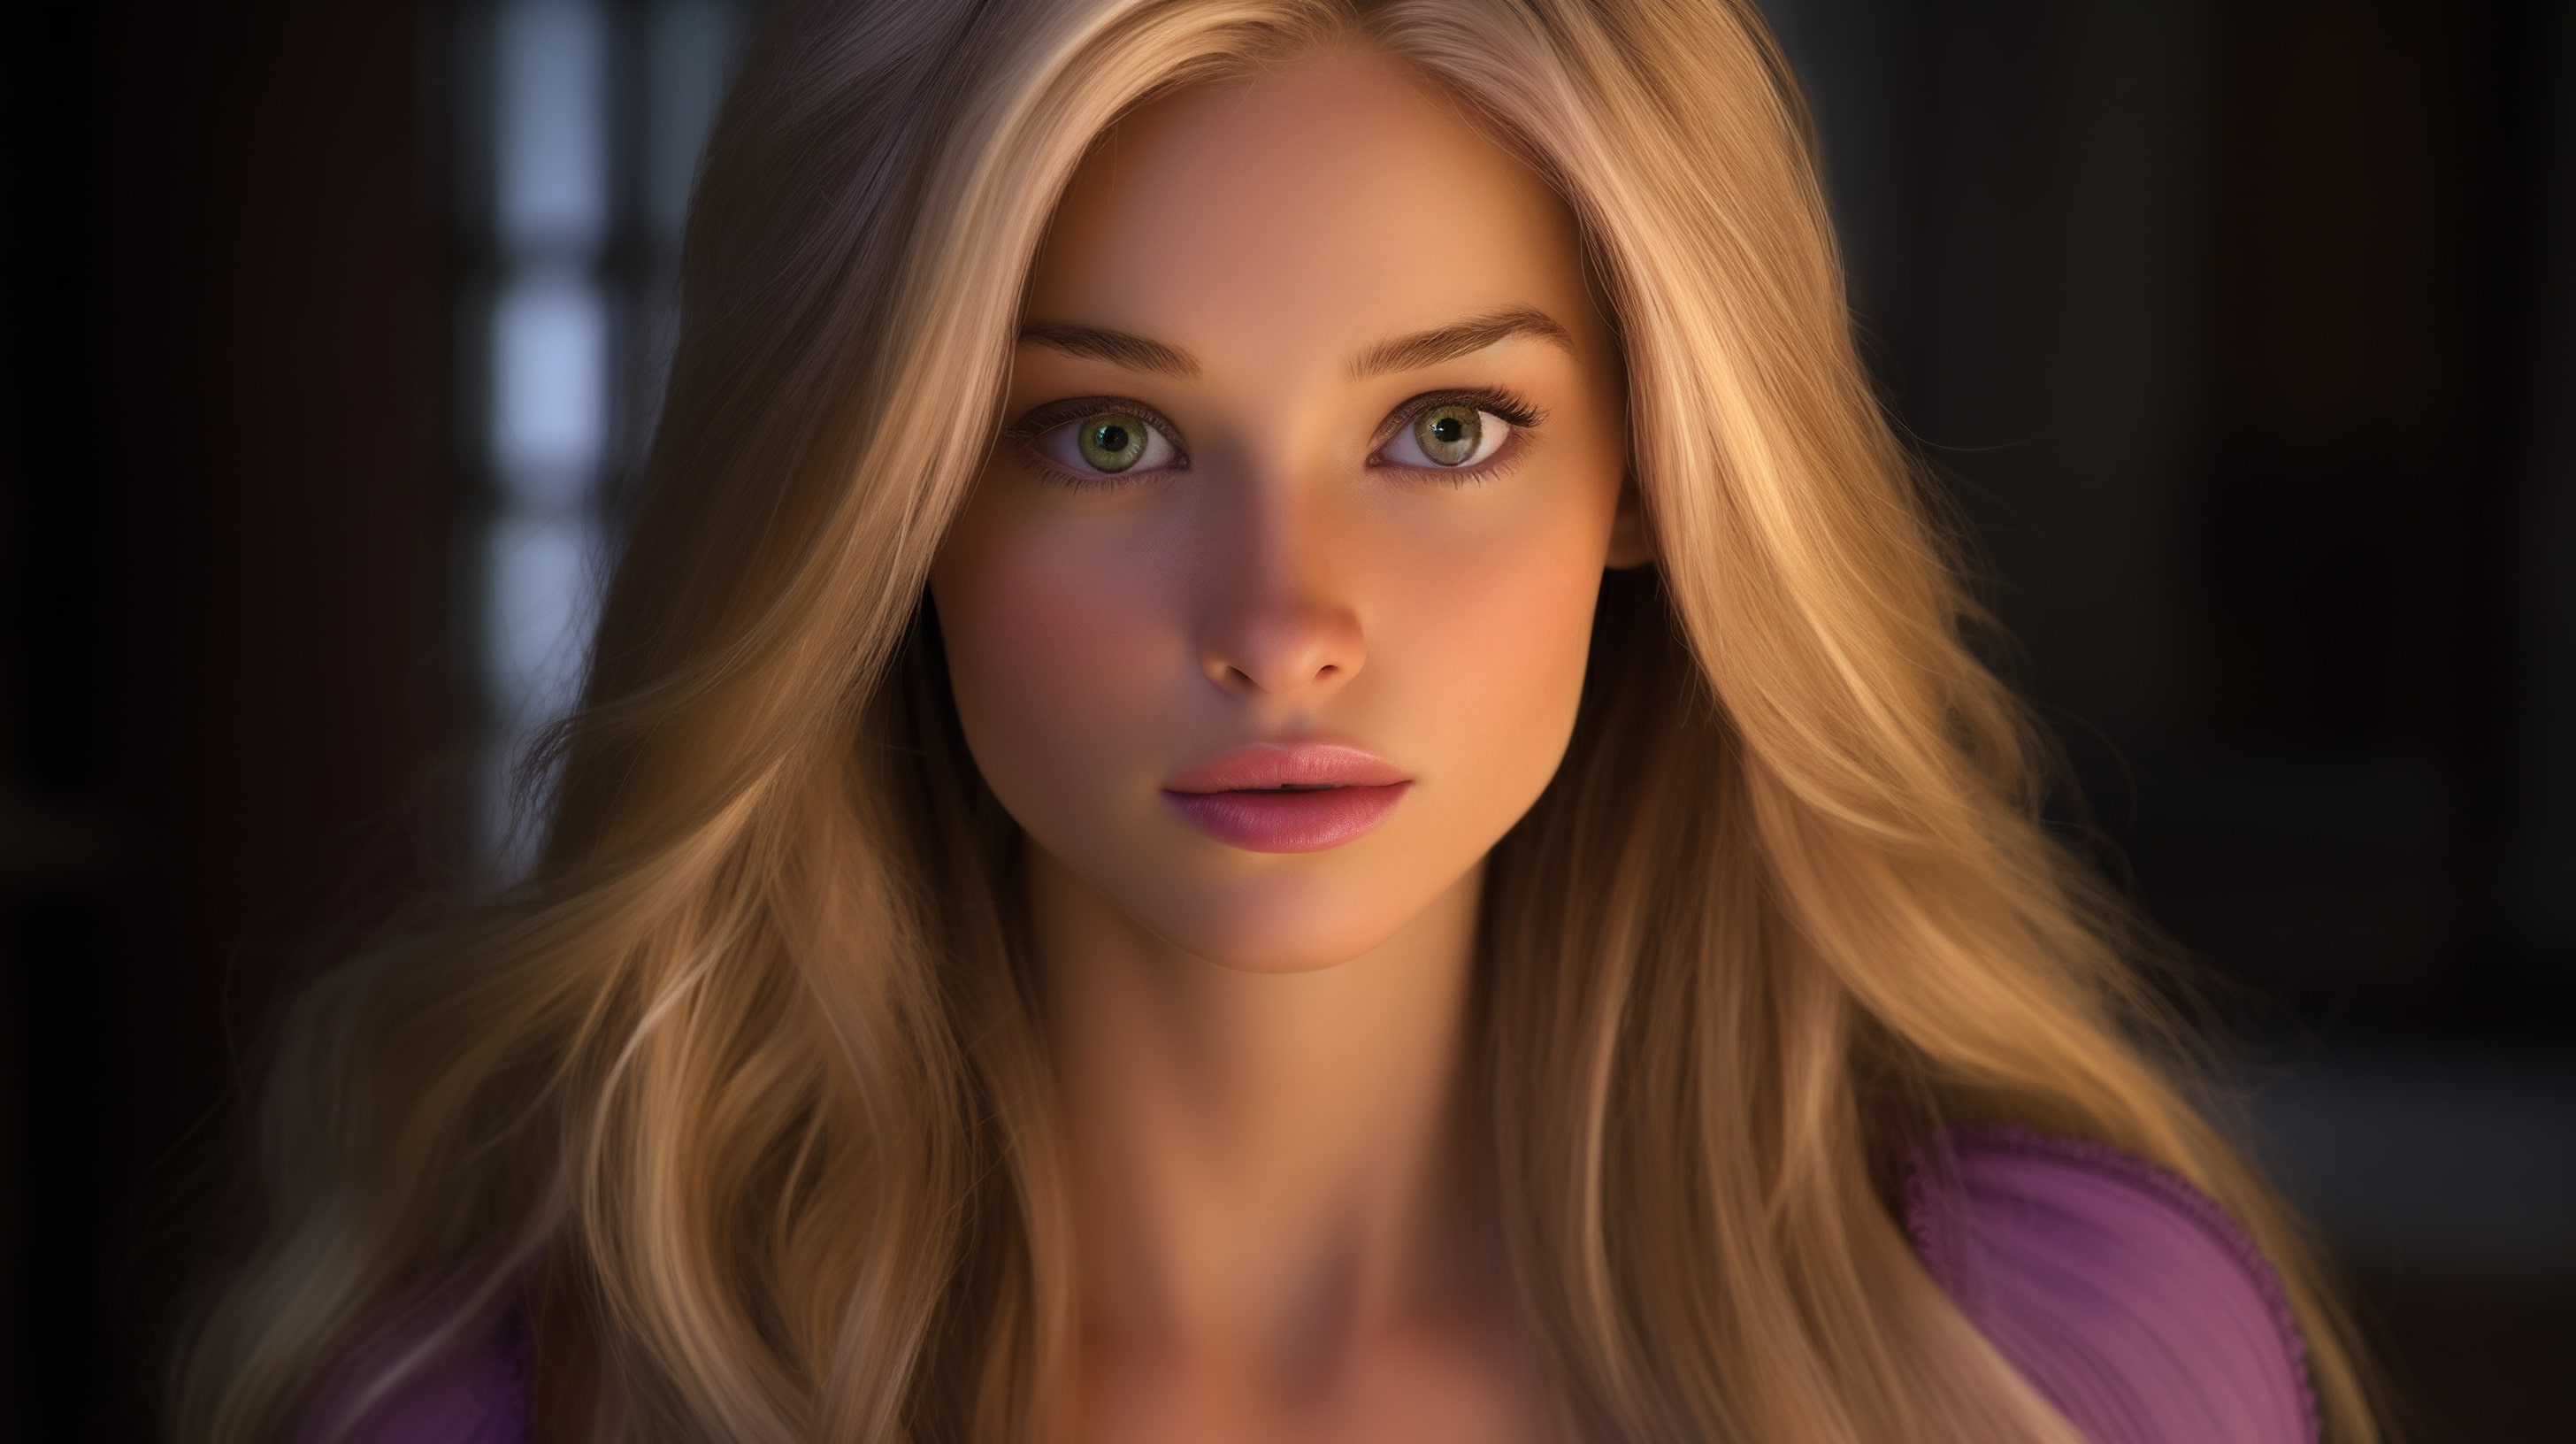 Photorealistic close-up portrait of Rapunzel